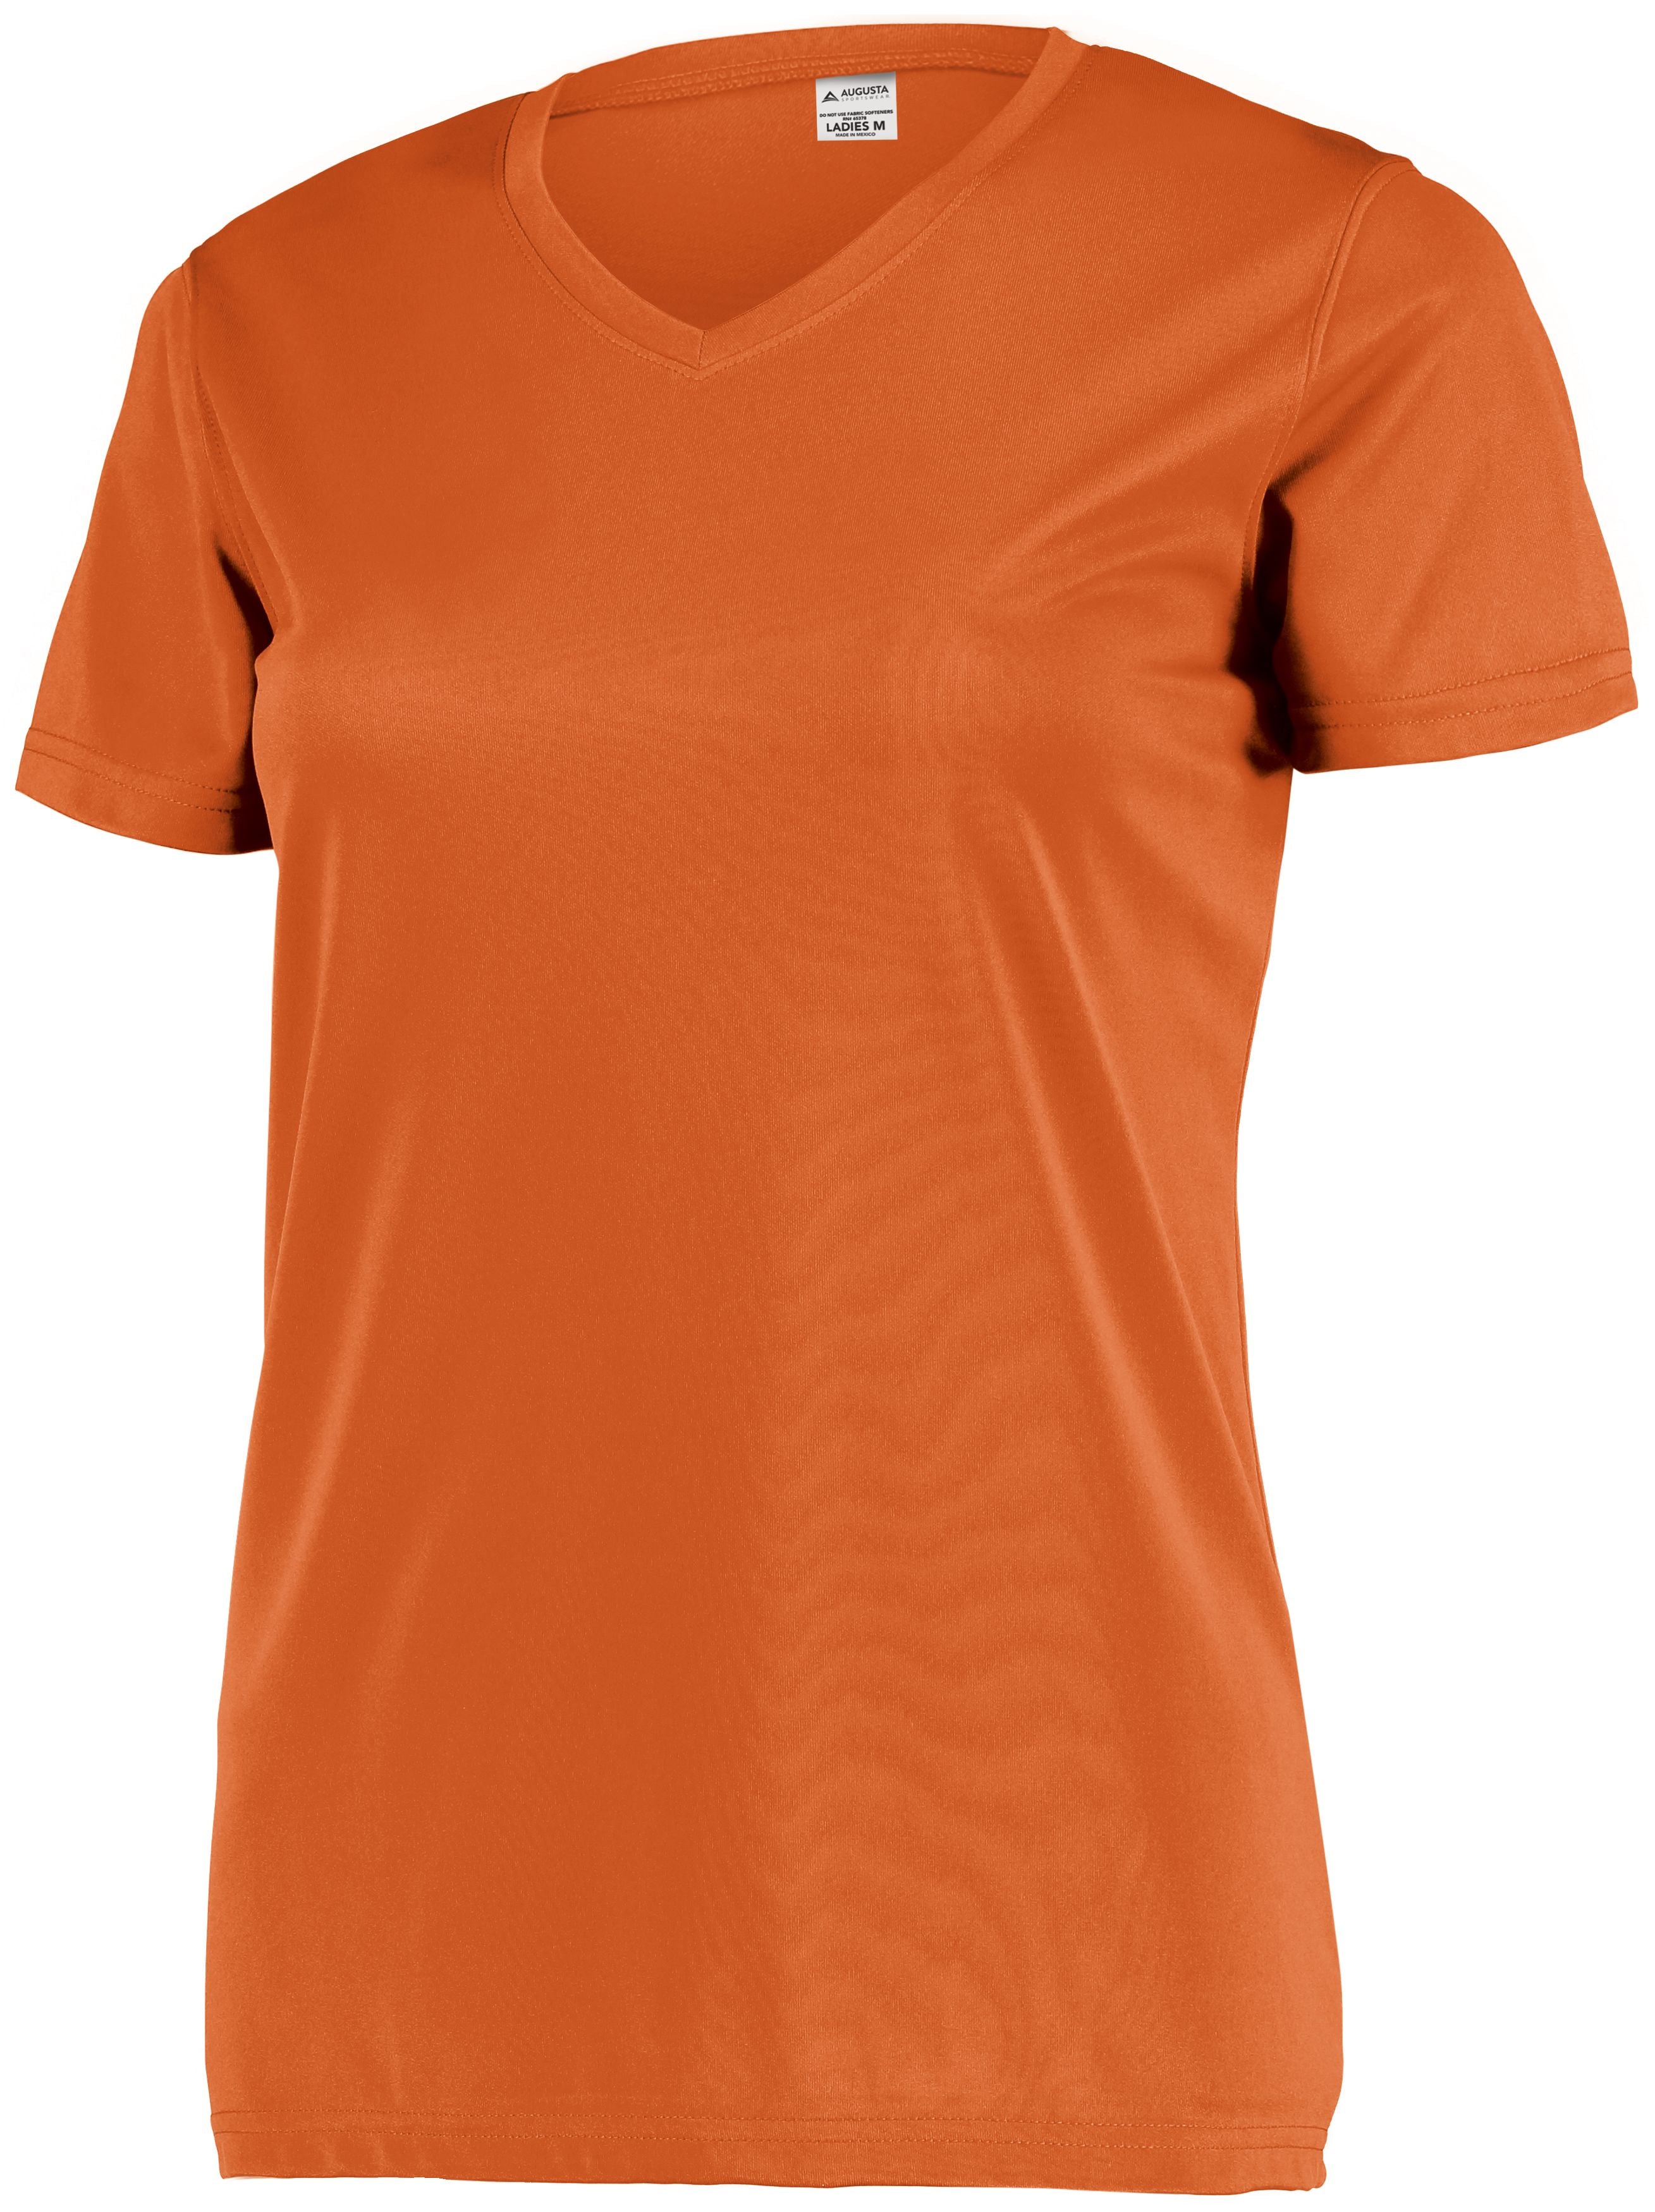 Augusta Sportswear Ladies Attain Wicking Set-In Sleeve Tee in Orange  -Part of the Ladies, Ladies-Tee-Shirt, T-Shirts, Augusta-Products, Shirts product lines at KanaleyCreations.com